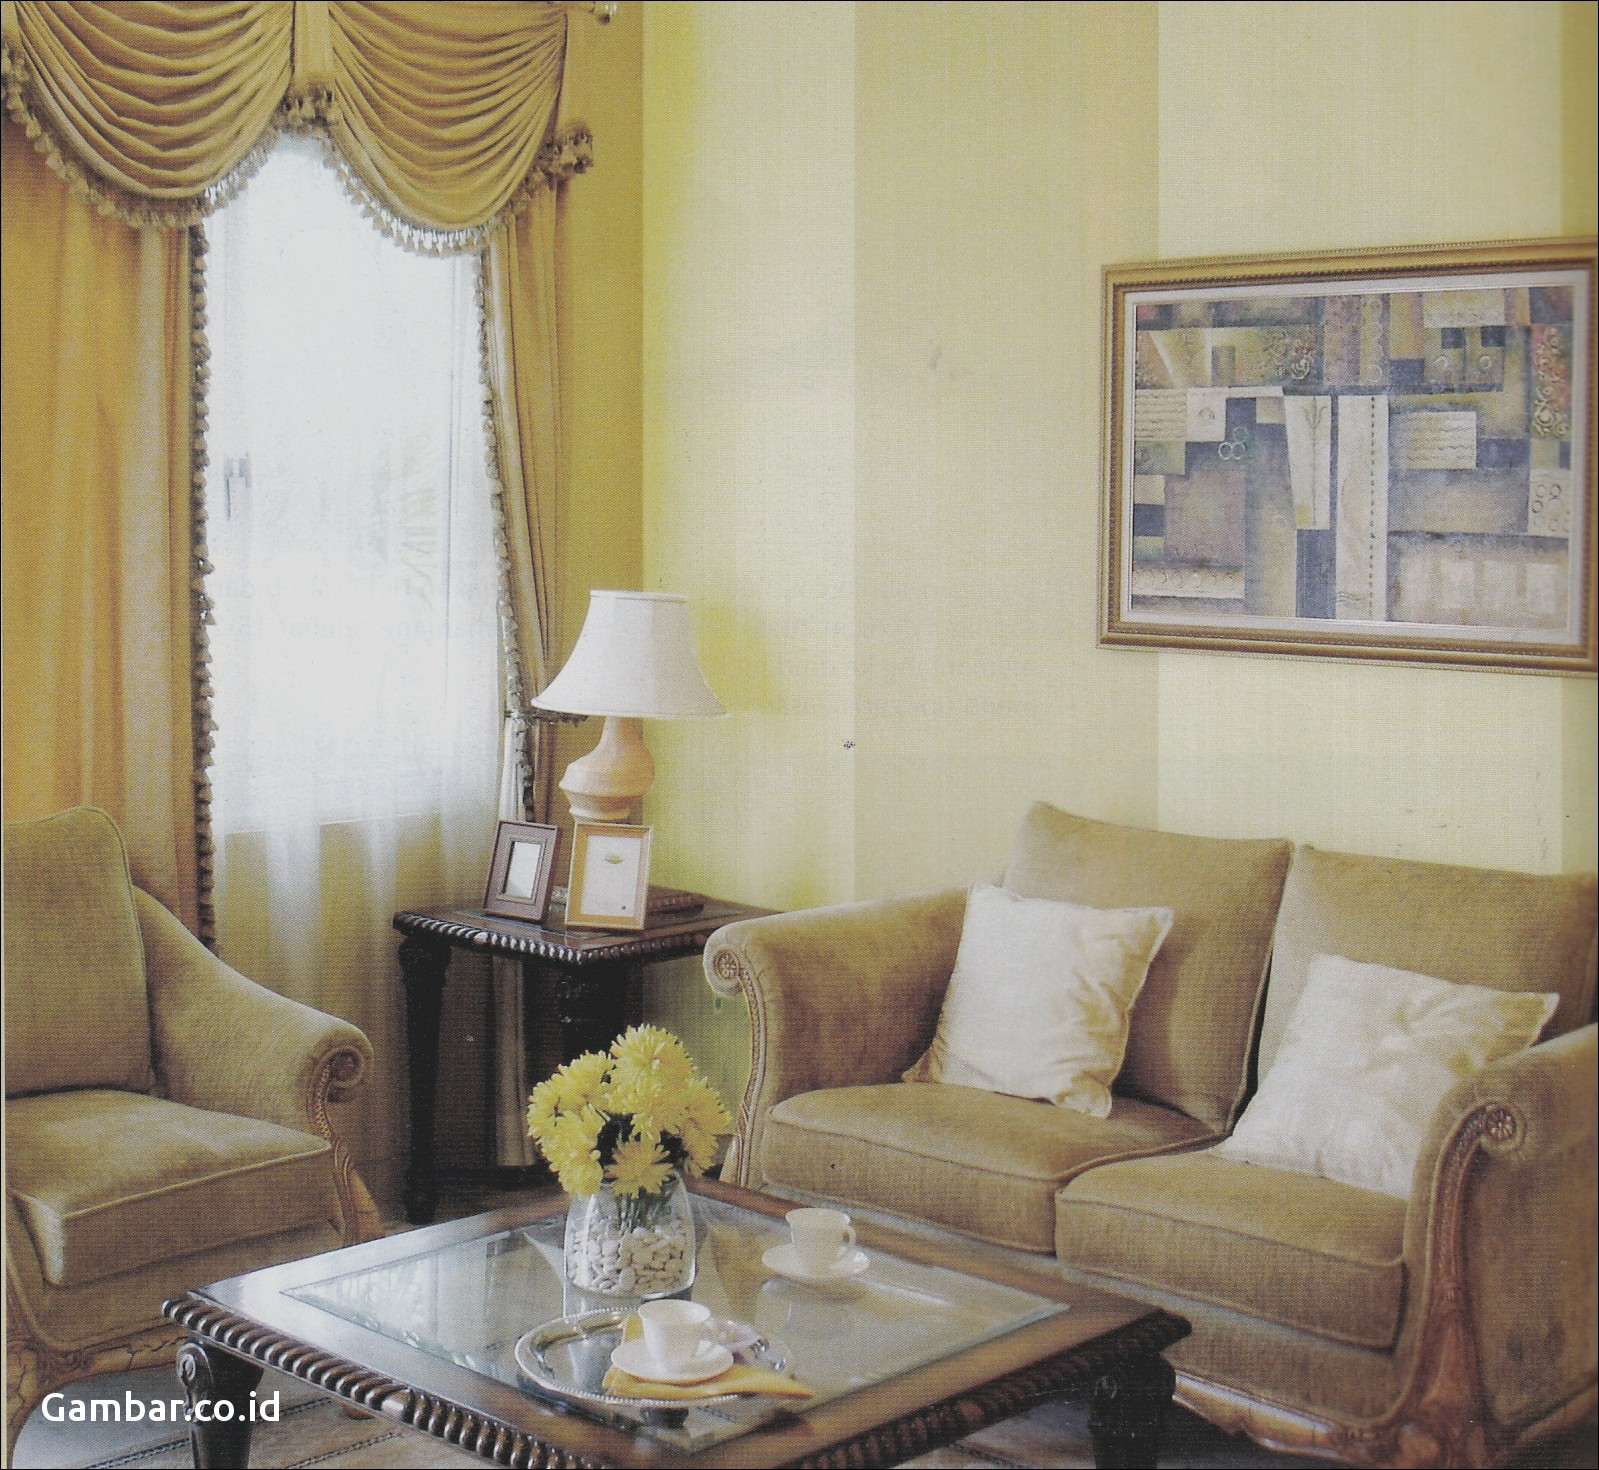 model wallpaper dinding ruang tamu,living room,room,furniture,interior design,curtain